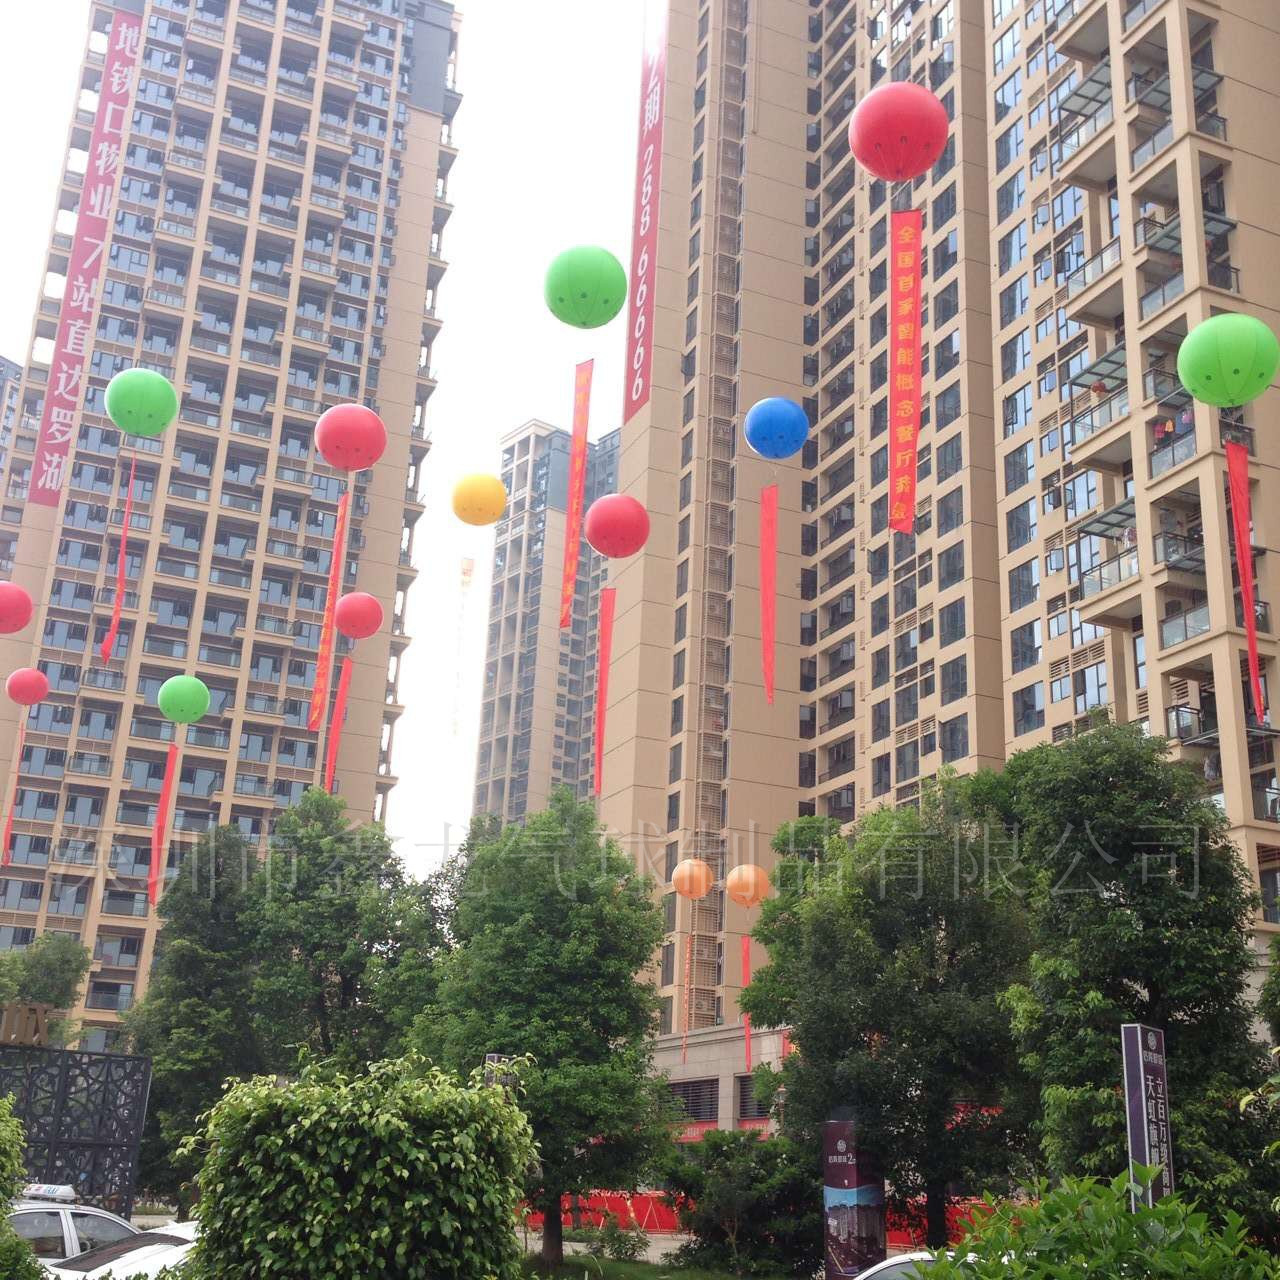 供应升空气球深圳厂家批发升空气球定制大气球广告促销气球 深圳市内现场安装